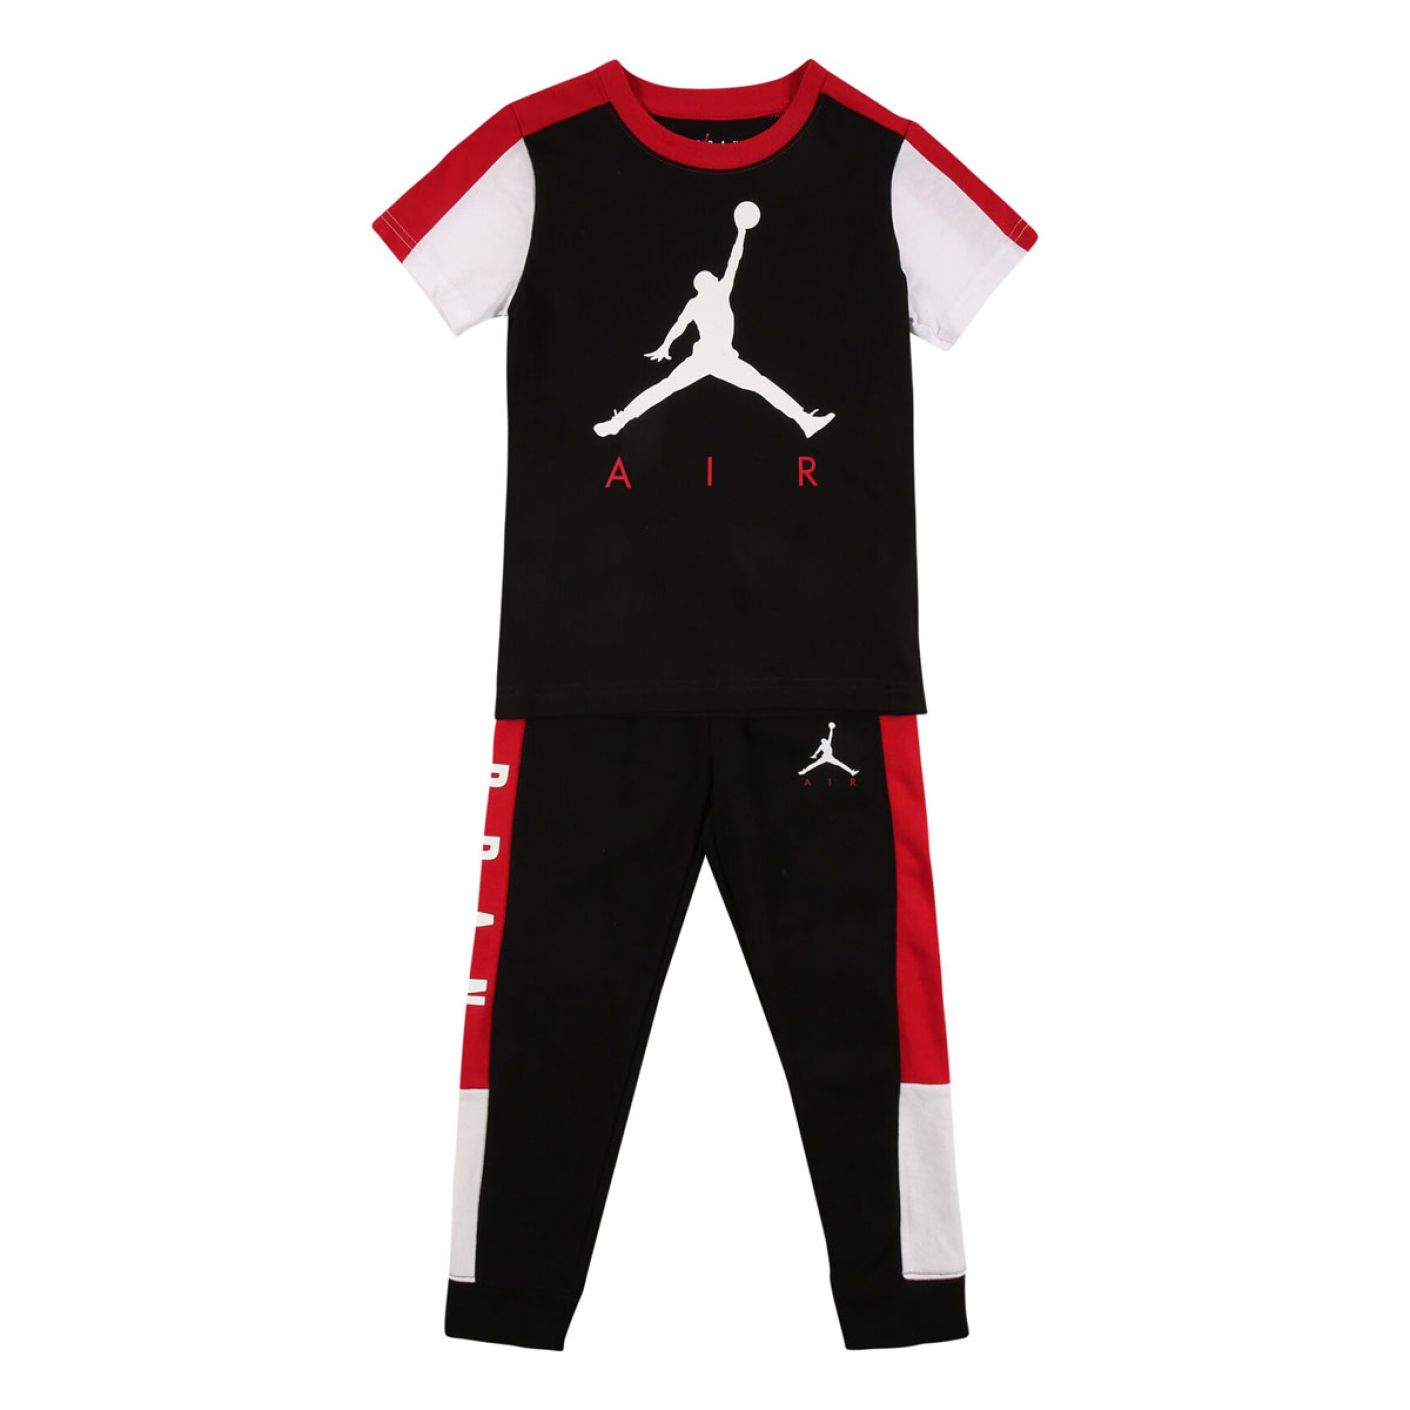 Nike Jordan Ait Transitional Black Red Complete Set for Kids